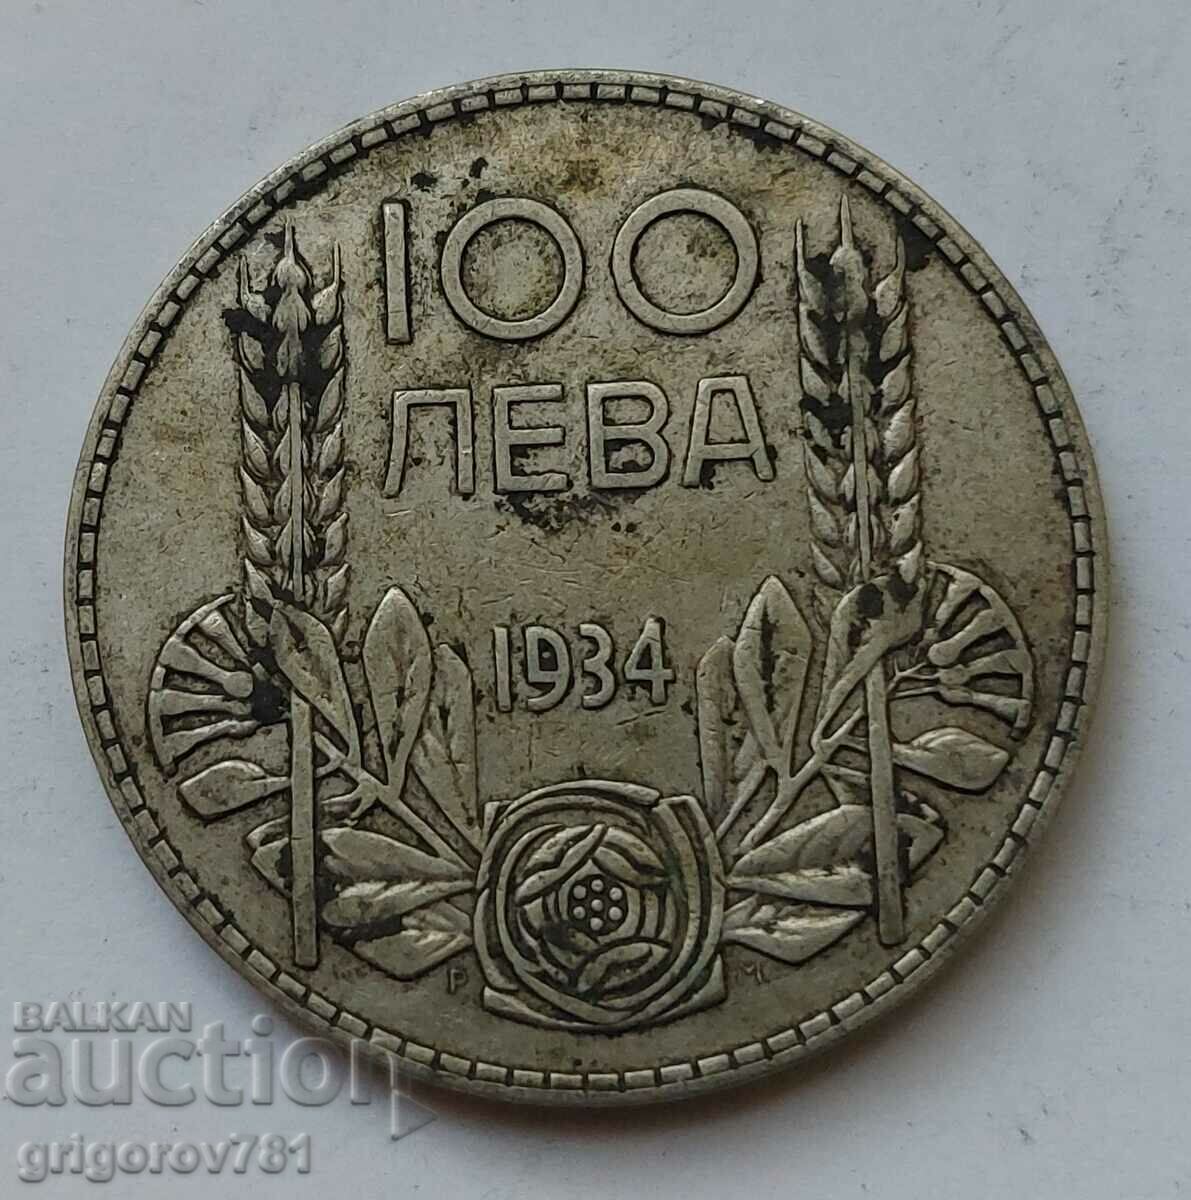 100 leva argint Bulgaria 1934 - monedă de argint #53